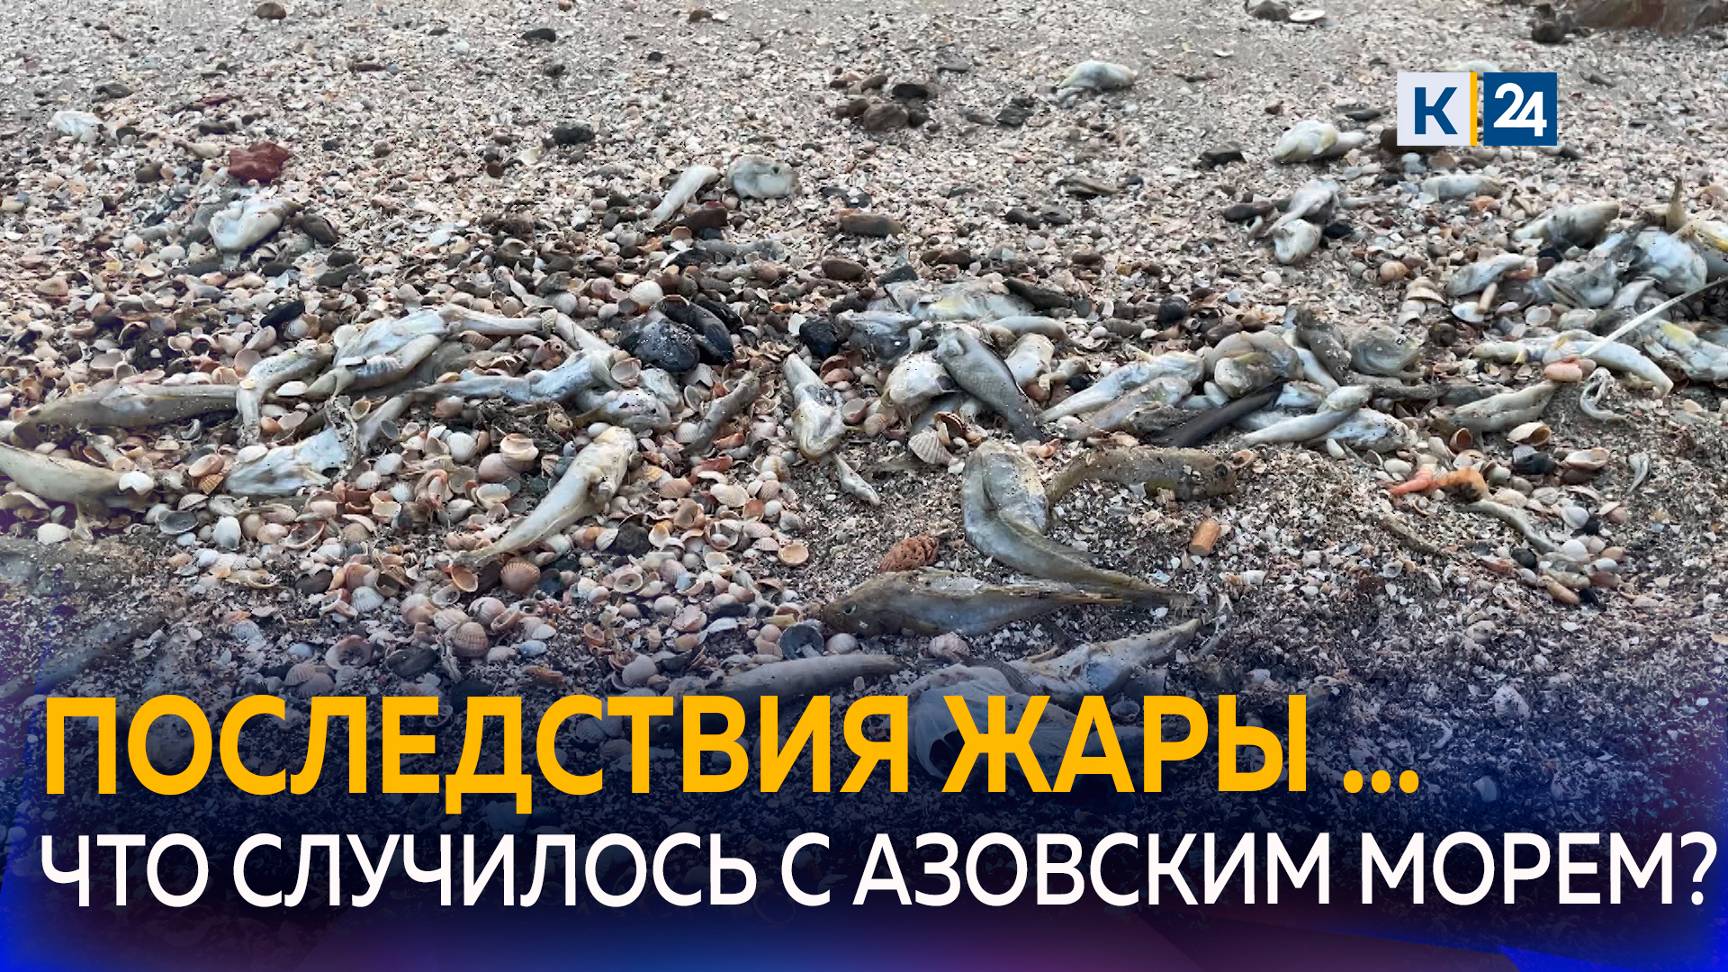 Что стало причиной замора бычка и странного поведения креветок в Азовском море?